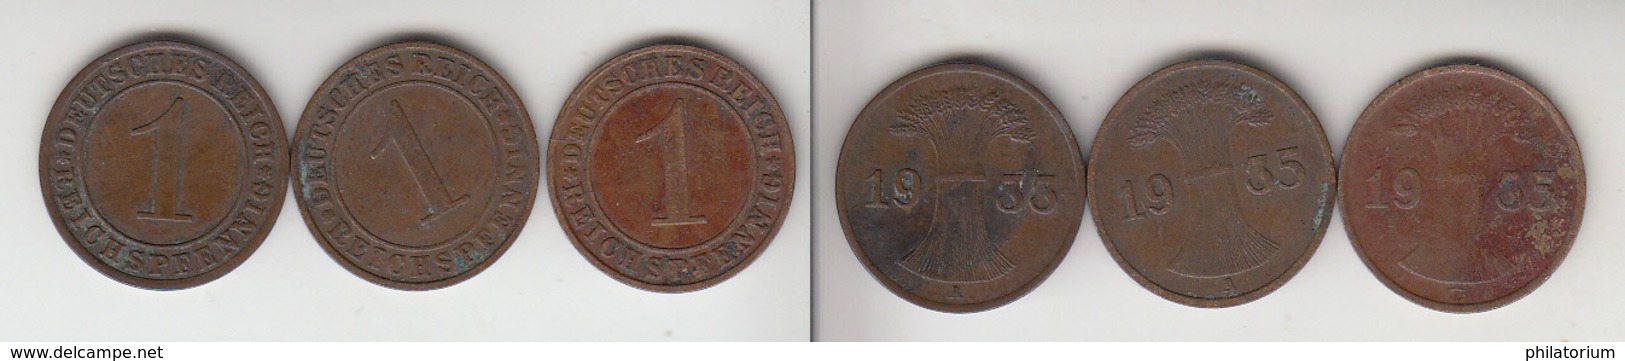 Allemagne  1 Reichspfennig  1933 A + 1935 A + 1935 G   Deutsches Reich - 1 Rentenpfennig & 1 Reichspfennig